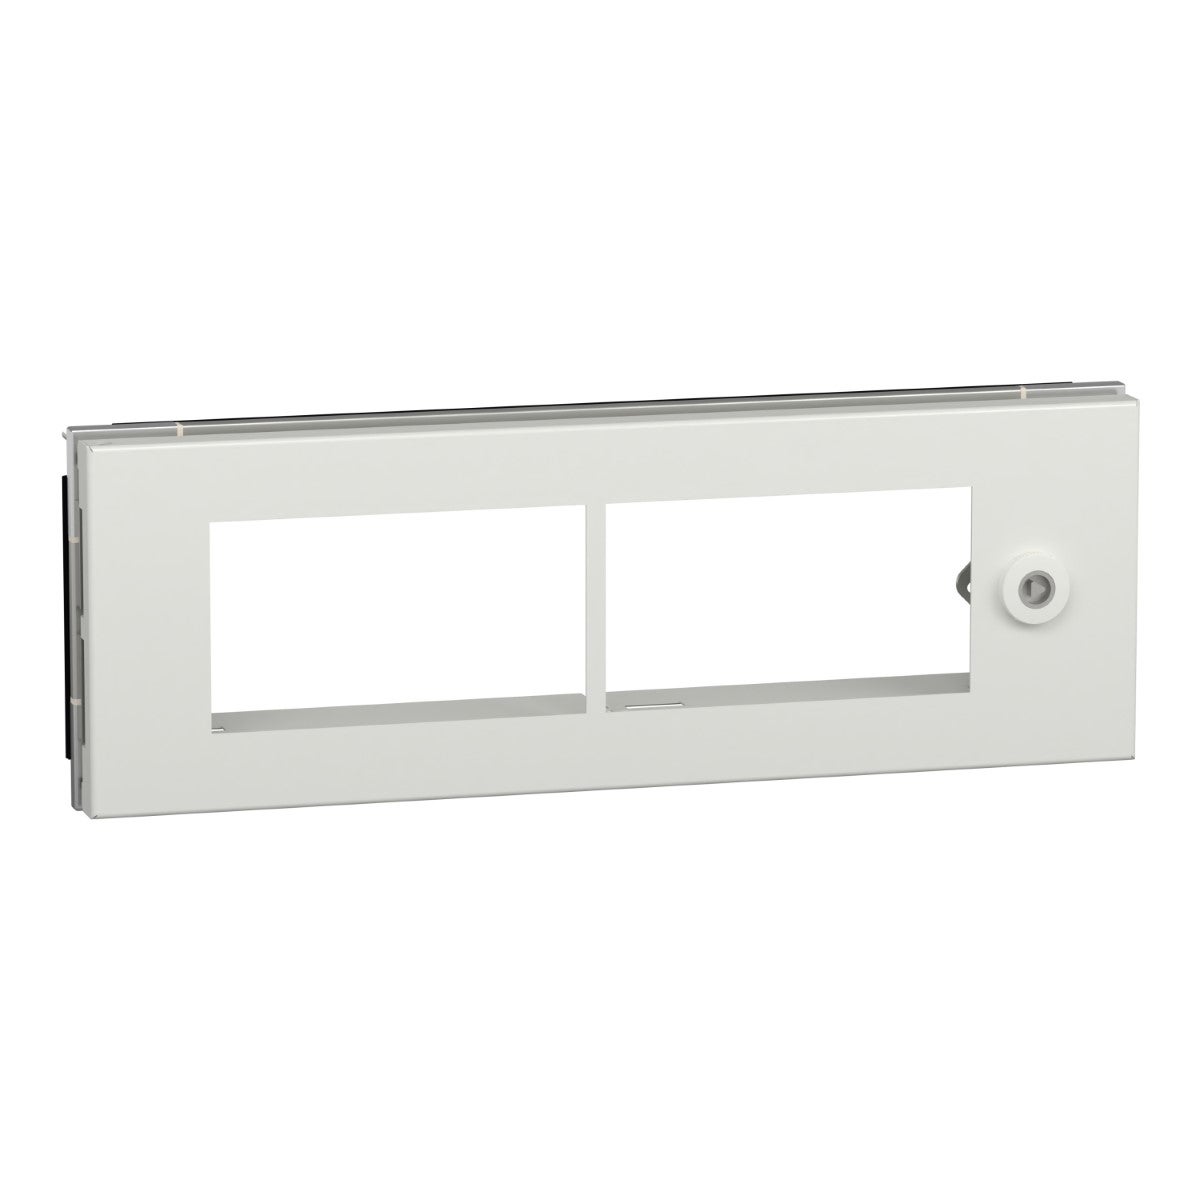 Partial door, PrismaSeT G, plain type for enclosure, 4M, cut-out, IP55, white, RAL 9003